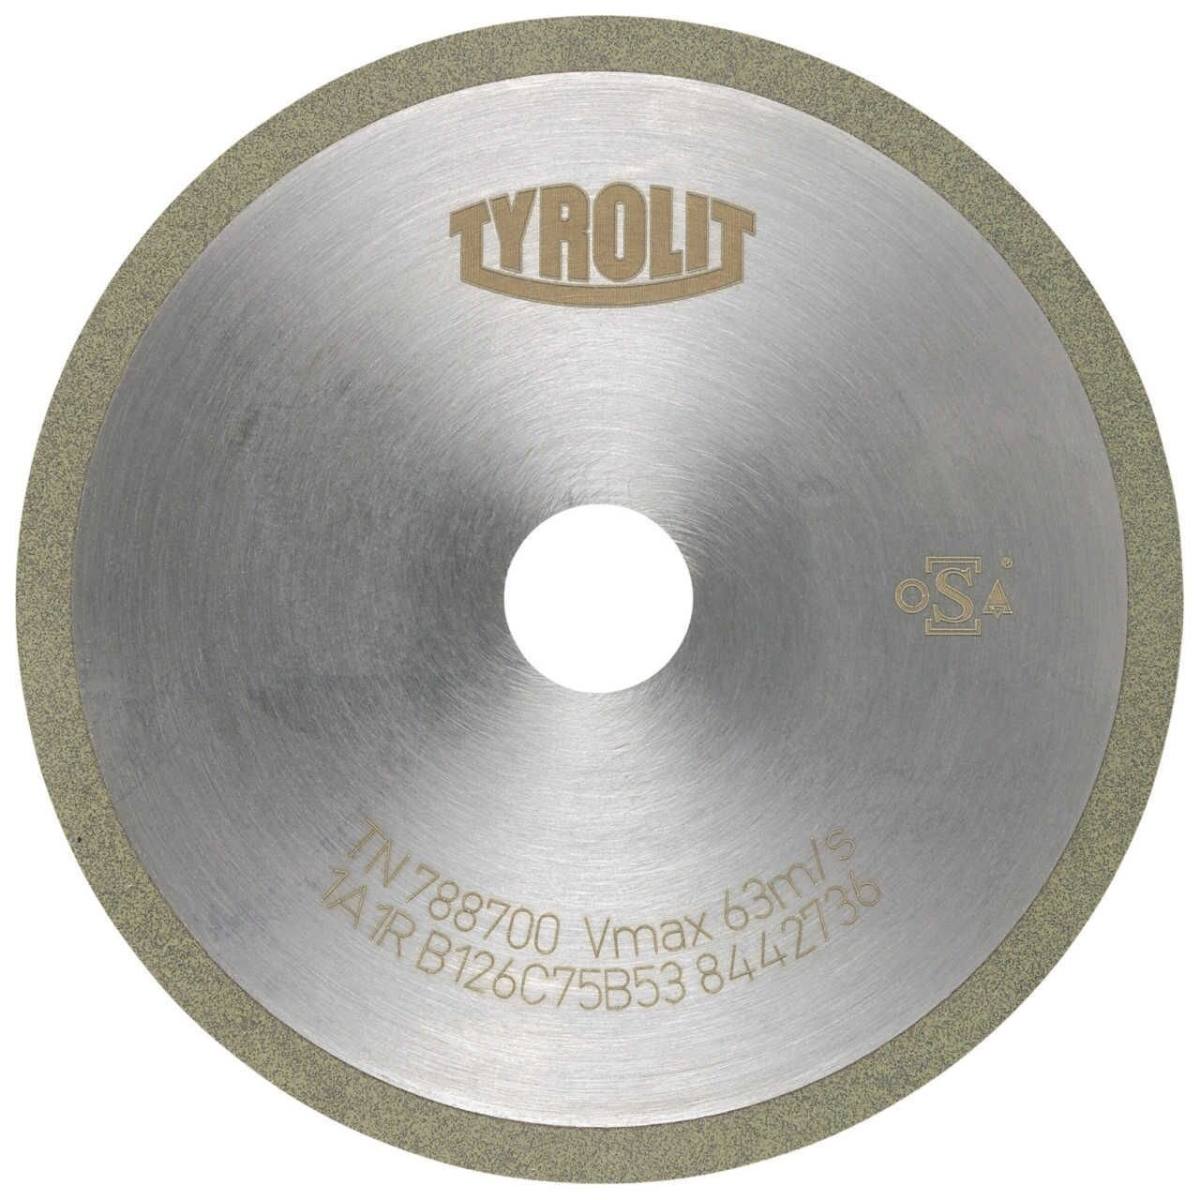 TYROLIT Utensili rotativi da taglio DxDxH 100x1,5x20 Per metallo duro, forma: 1A1R (disco da taglio con rotella continua), Art. 108728